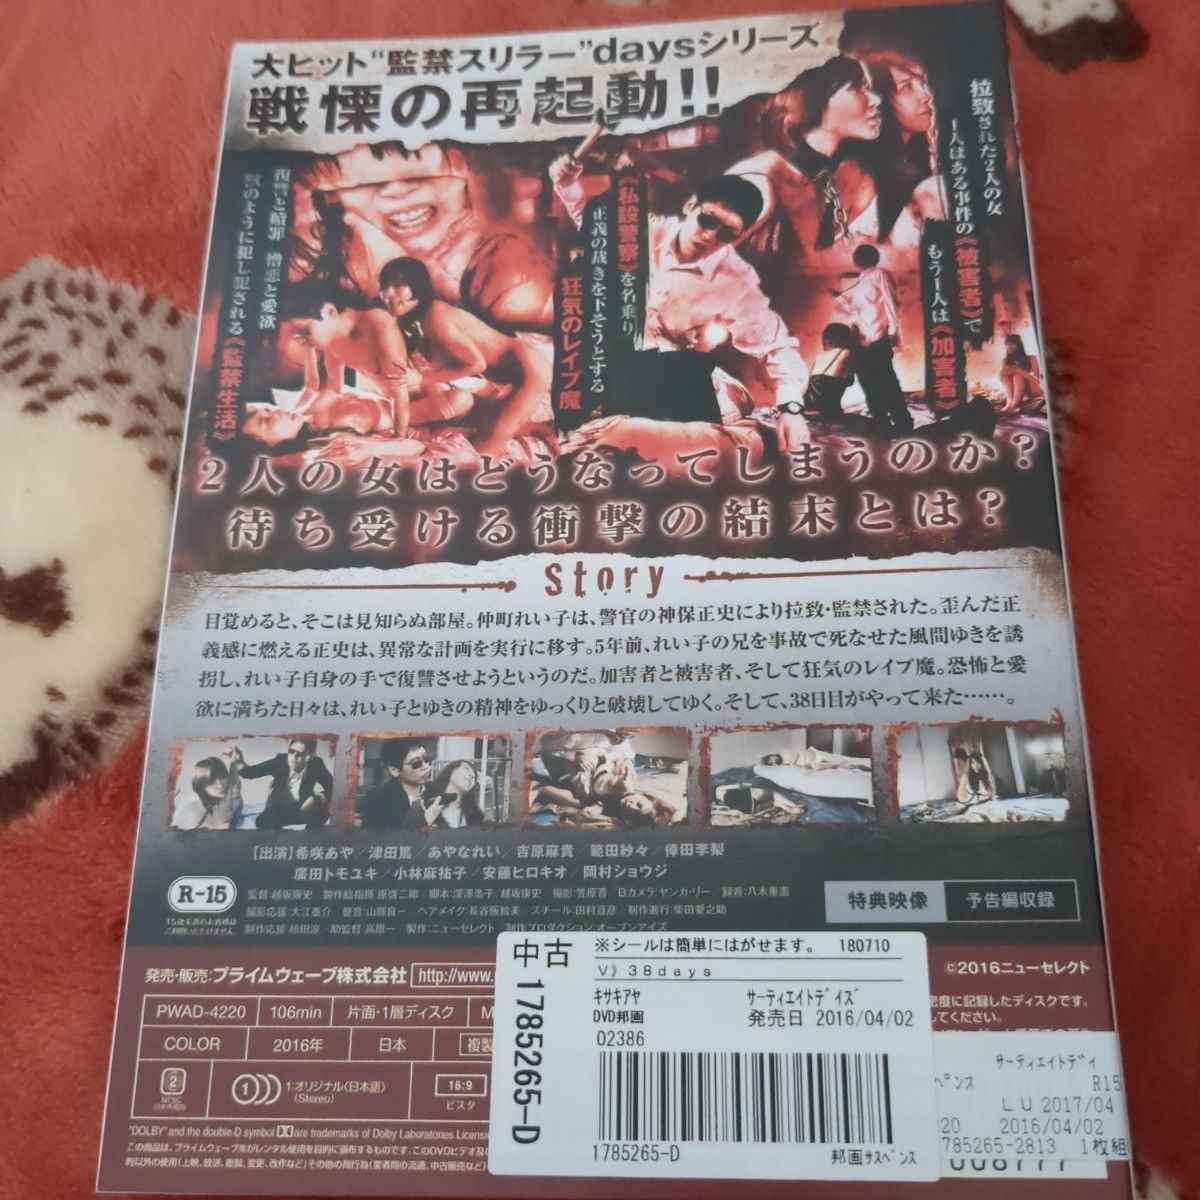 【2枚セット】DVD 38days＋39days R-15